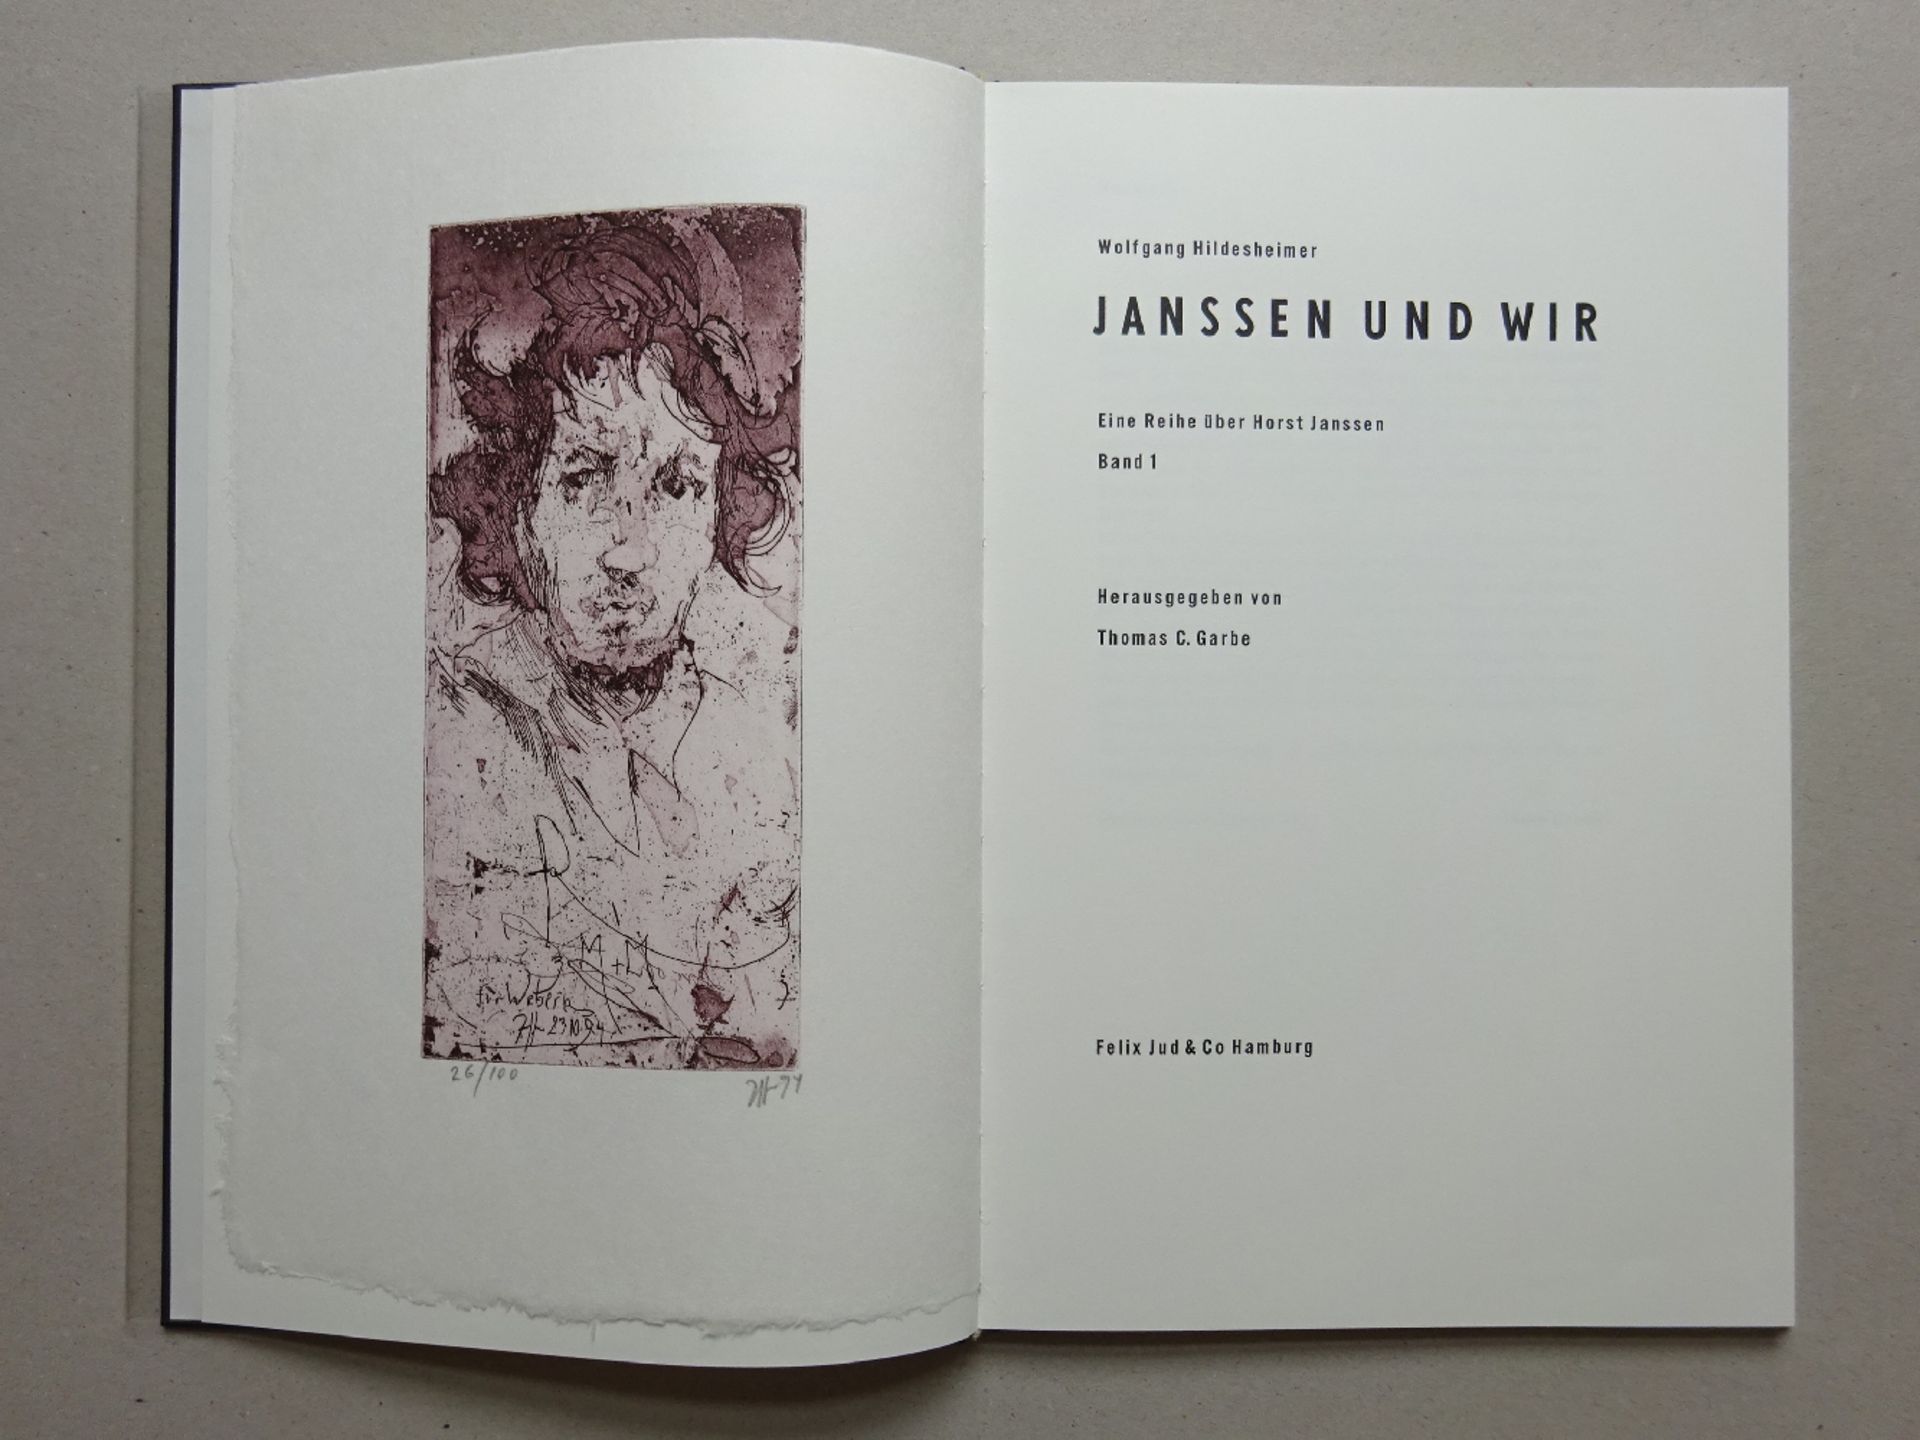 Hildesheimer - Janssen und wir - Image 2 of 5